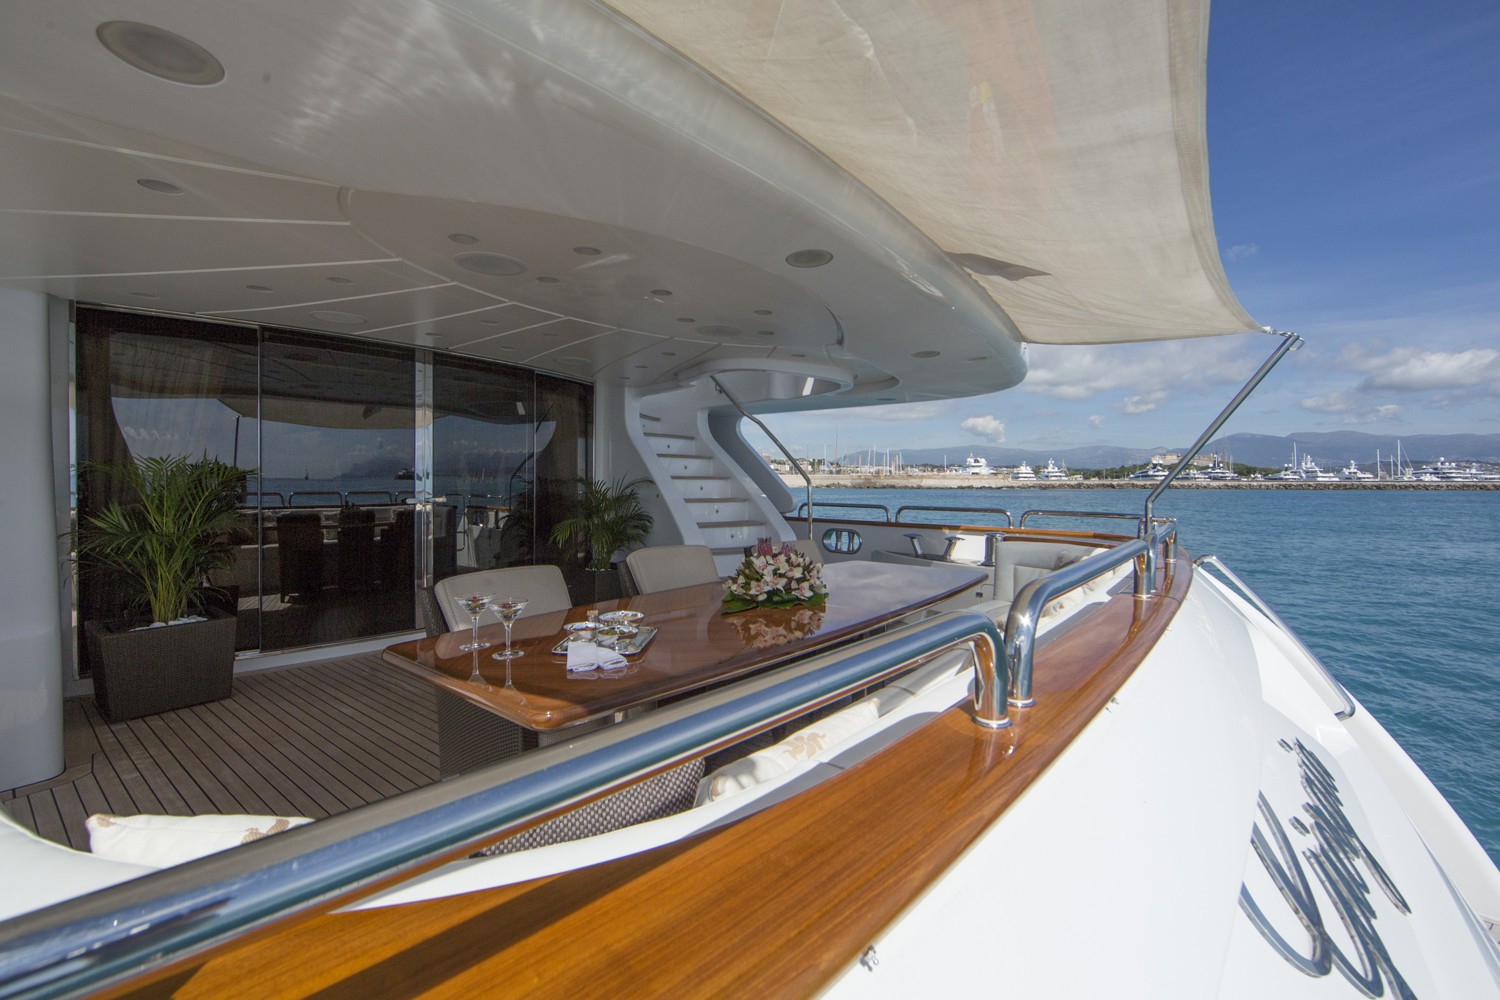 The 36m Yacht GIORGIA